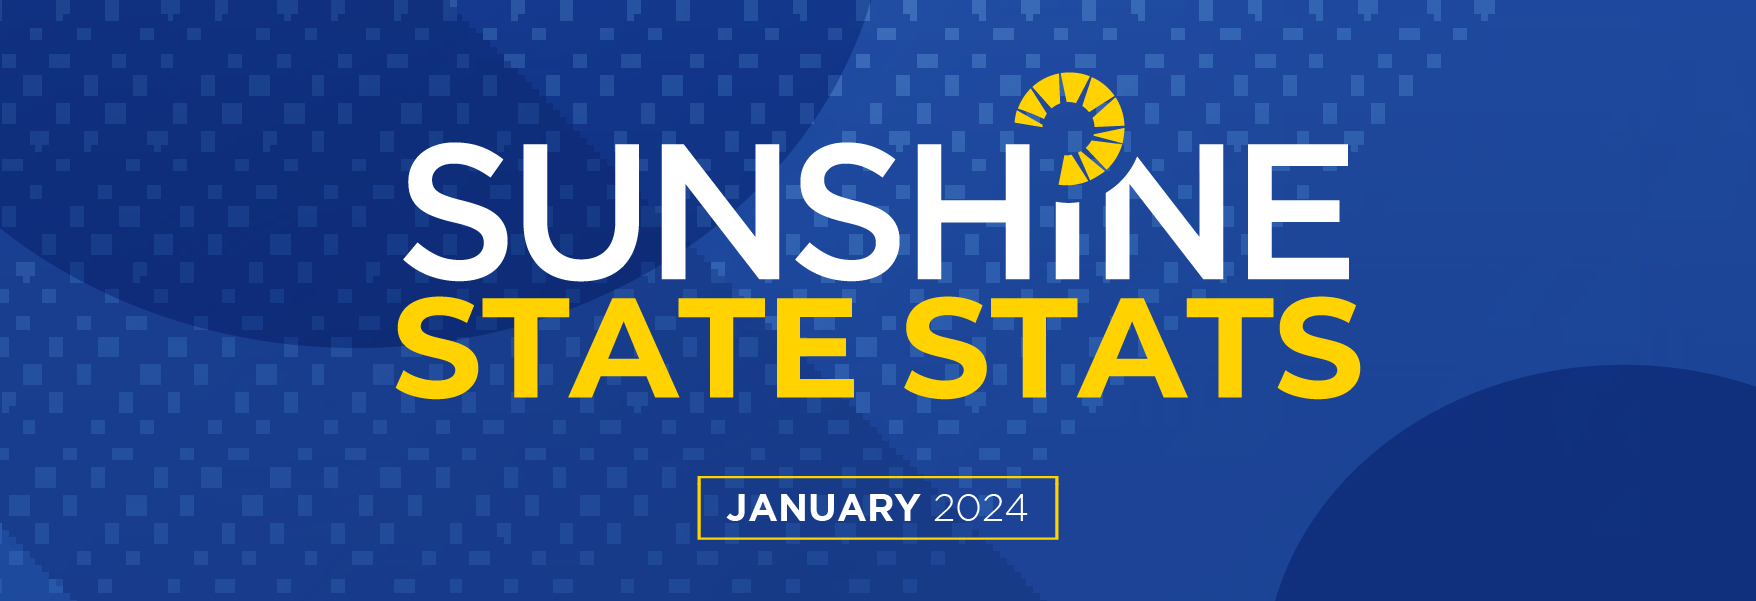 January 2024 Sunshine State Stats